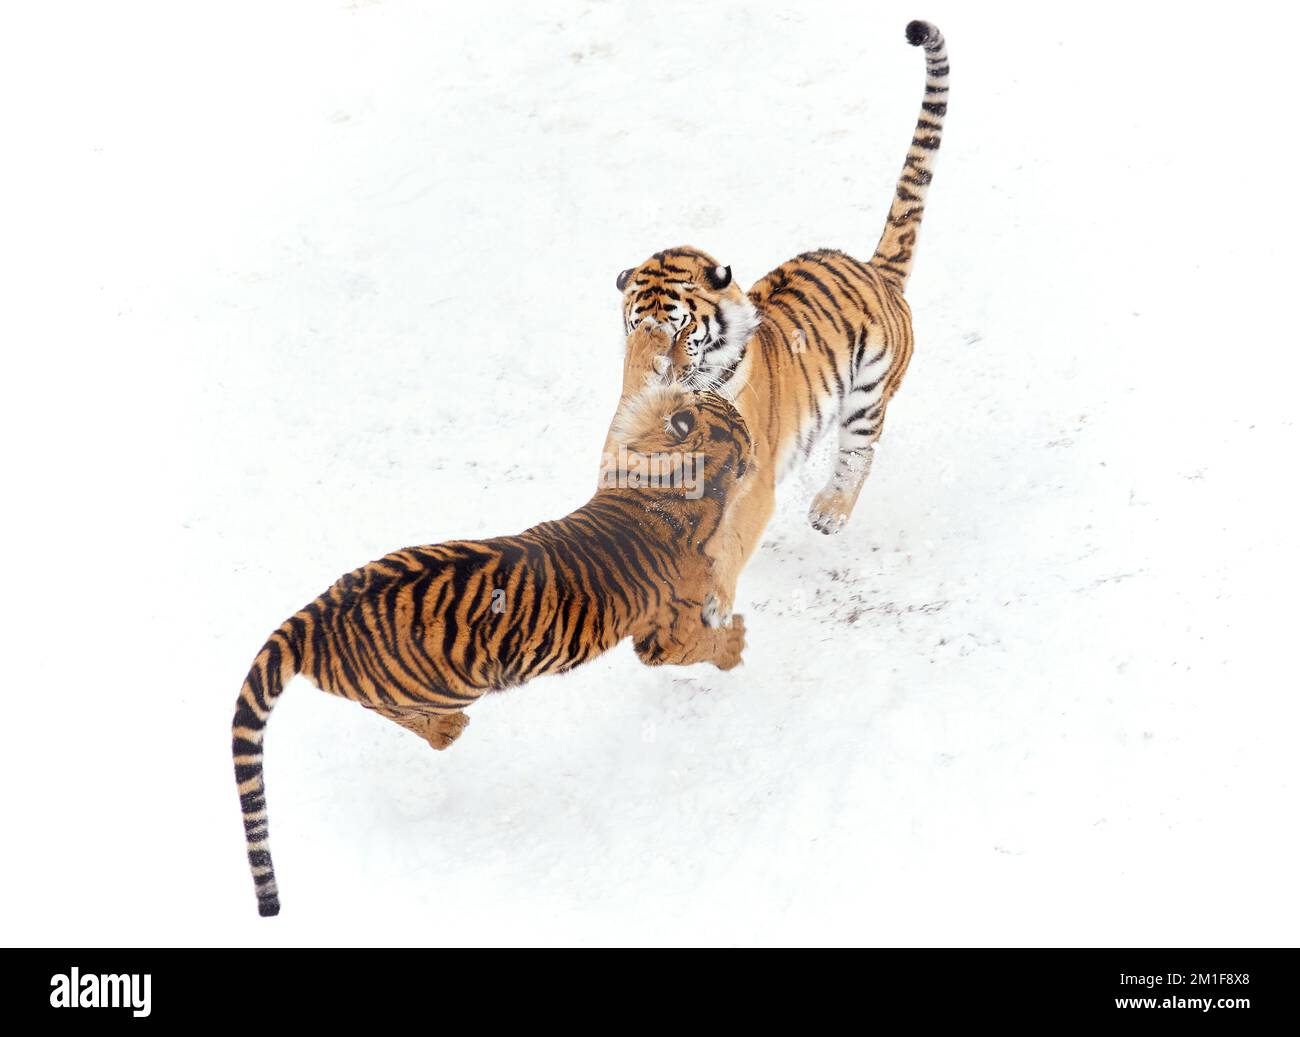 Lotta contro la neve. Sumatran e Amur Tigers giocano durante un fine settimana innevato a Dudley Zoological Gardens, England.Dudley Zoo, UK: IMMAGINI GIOCOSE s Foto Stock